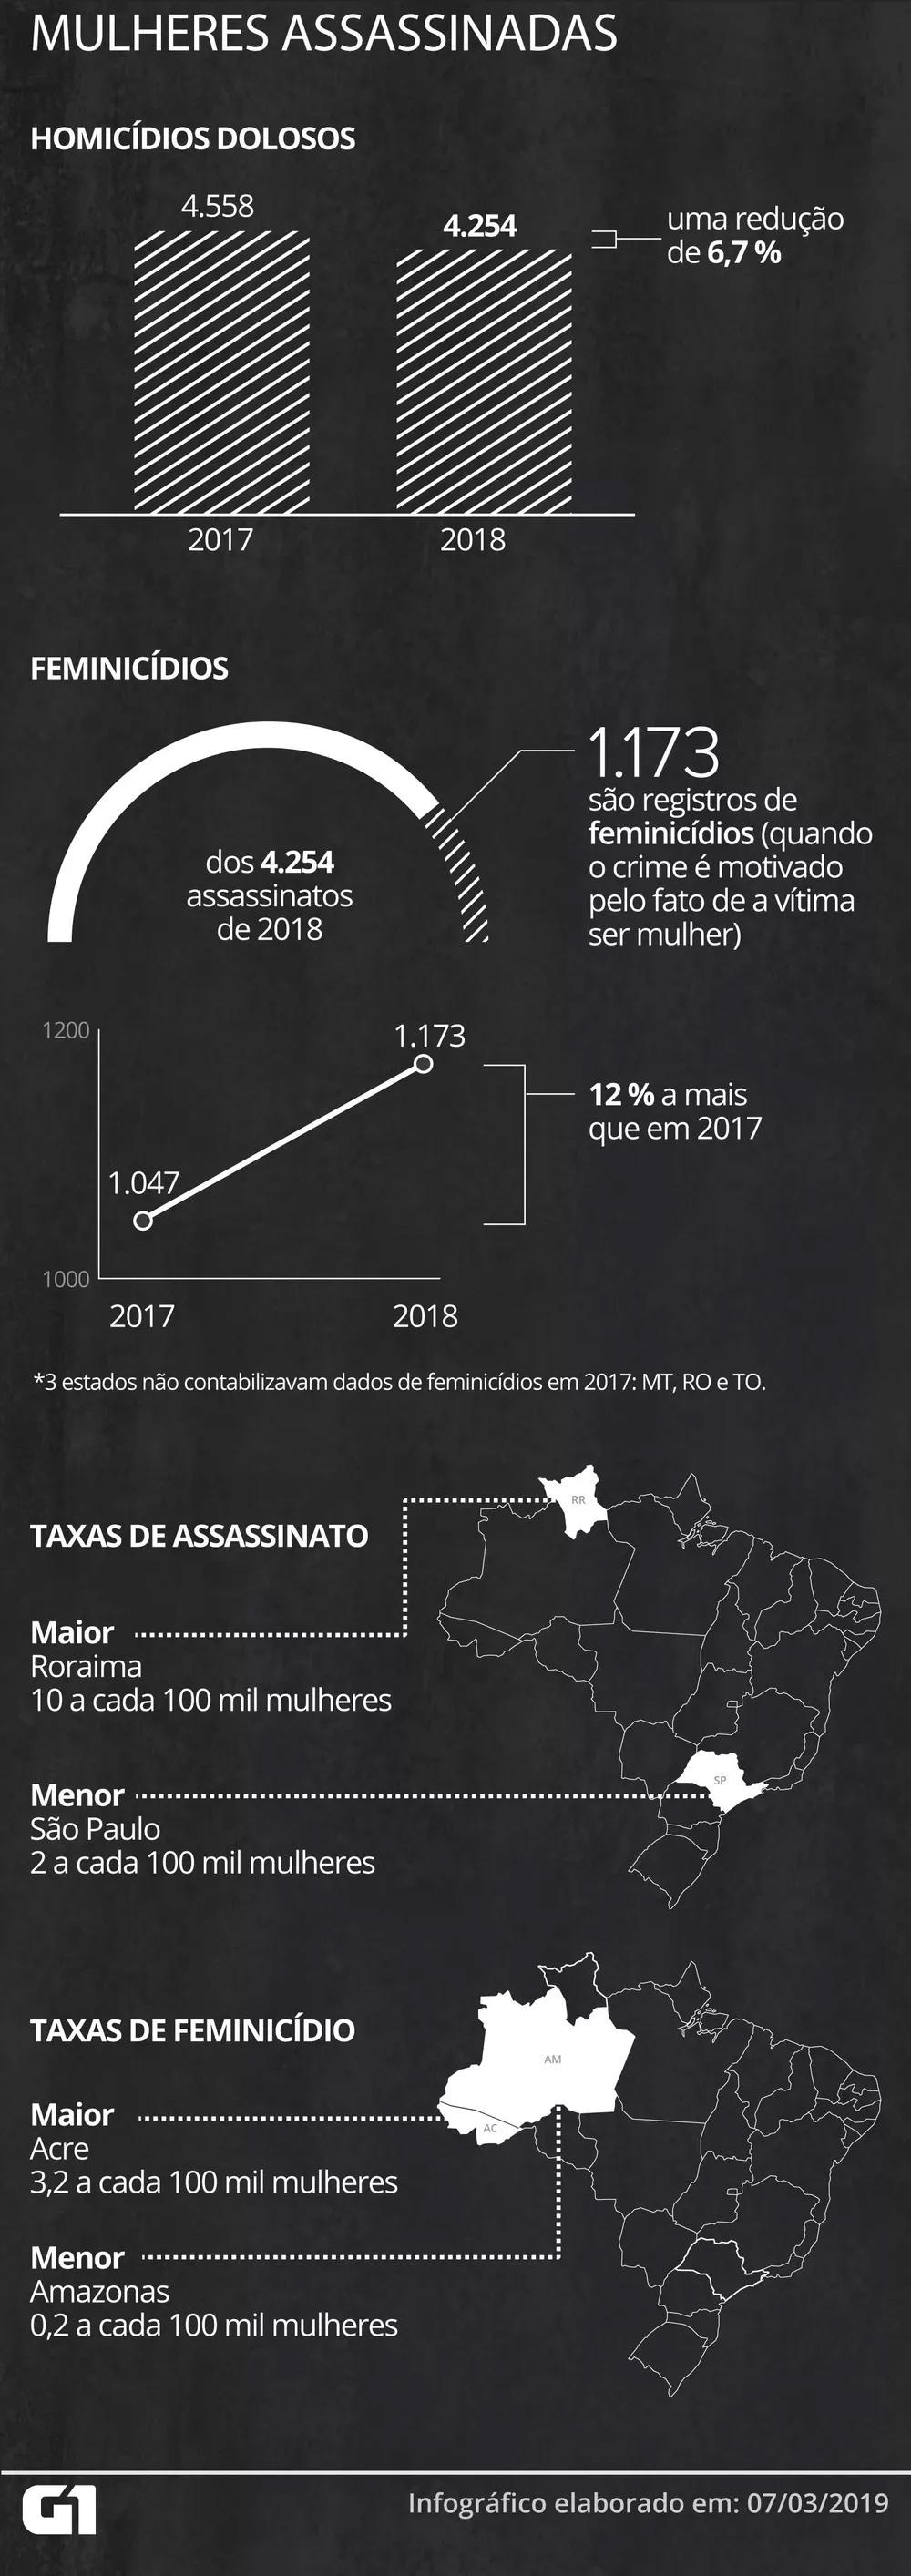 doloso. Diferentemente de anos anteriores, apenas um estado diz não possuir informações referentes ao crime: Mato Grosso.